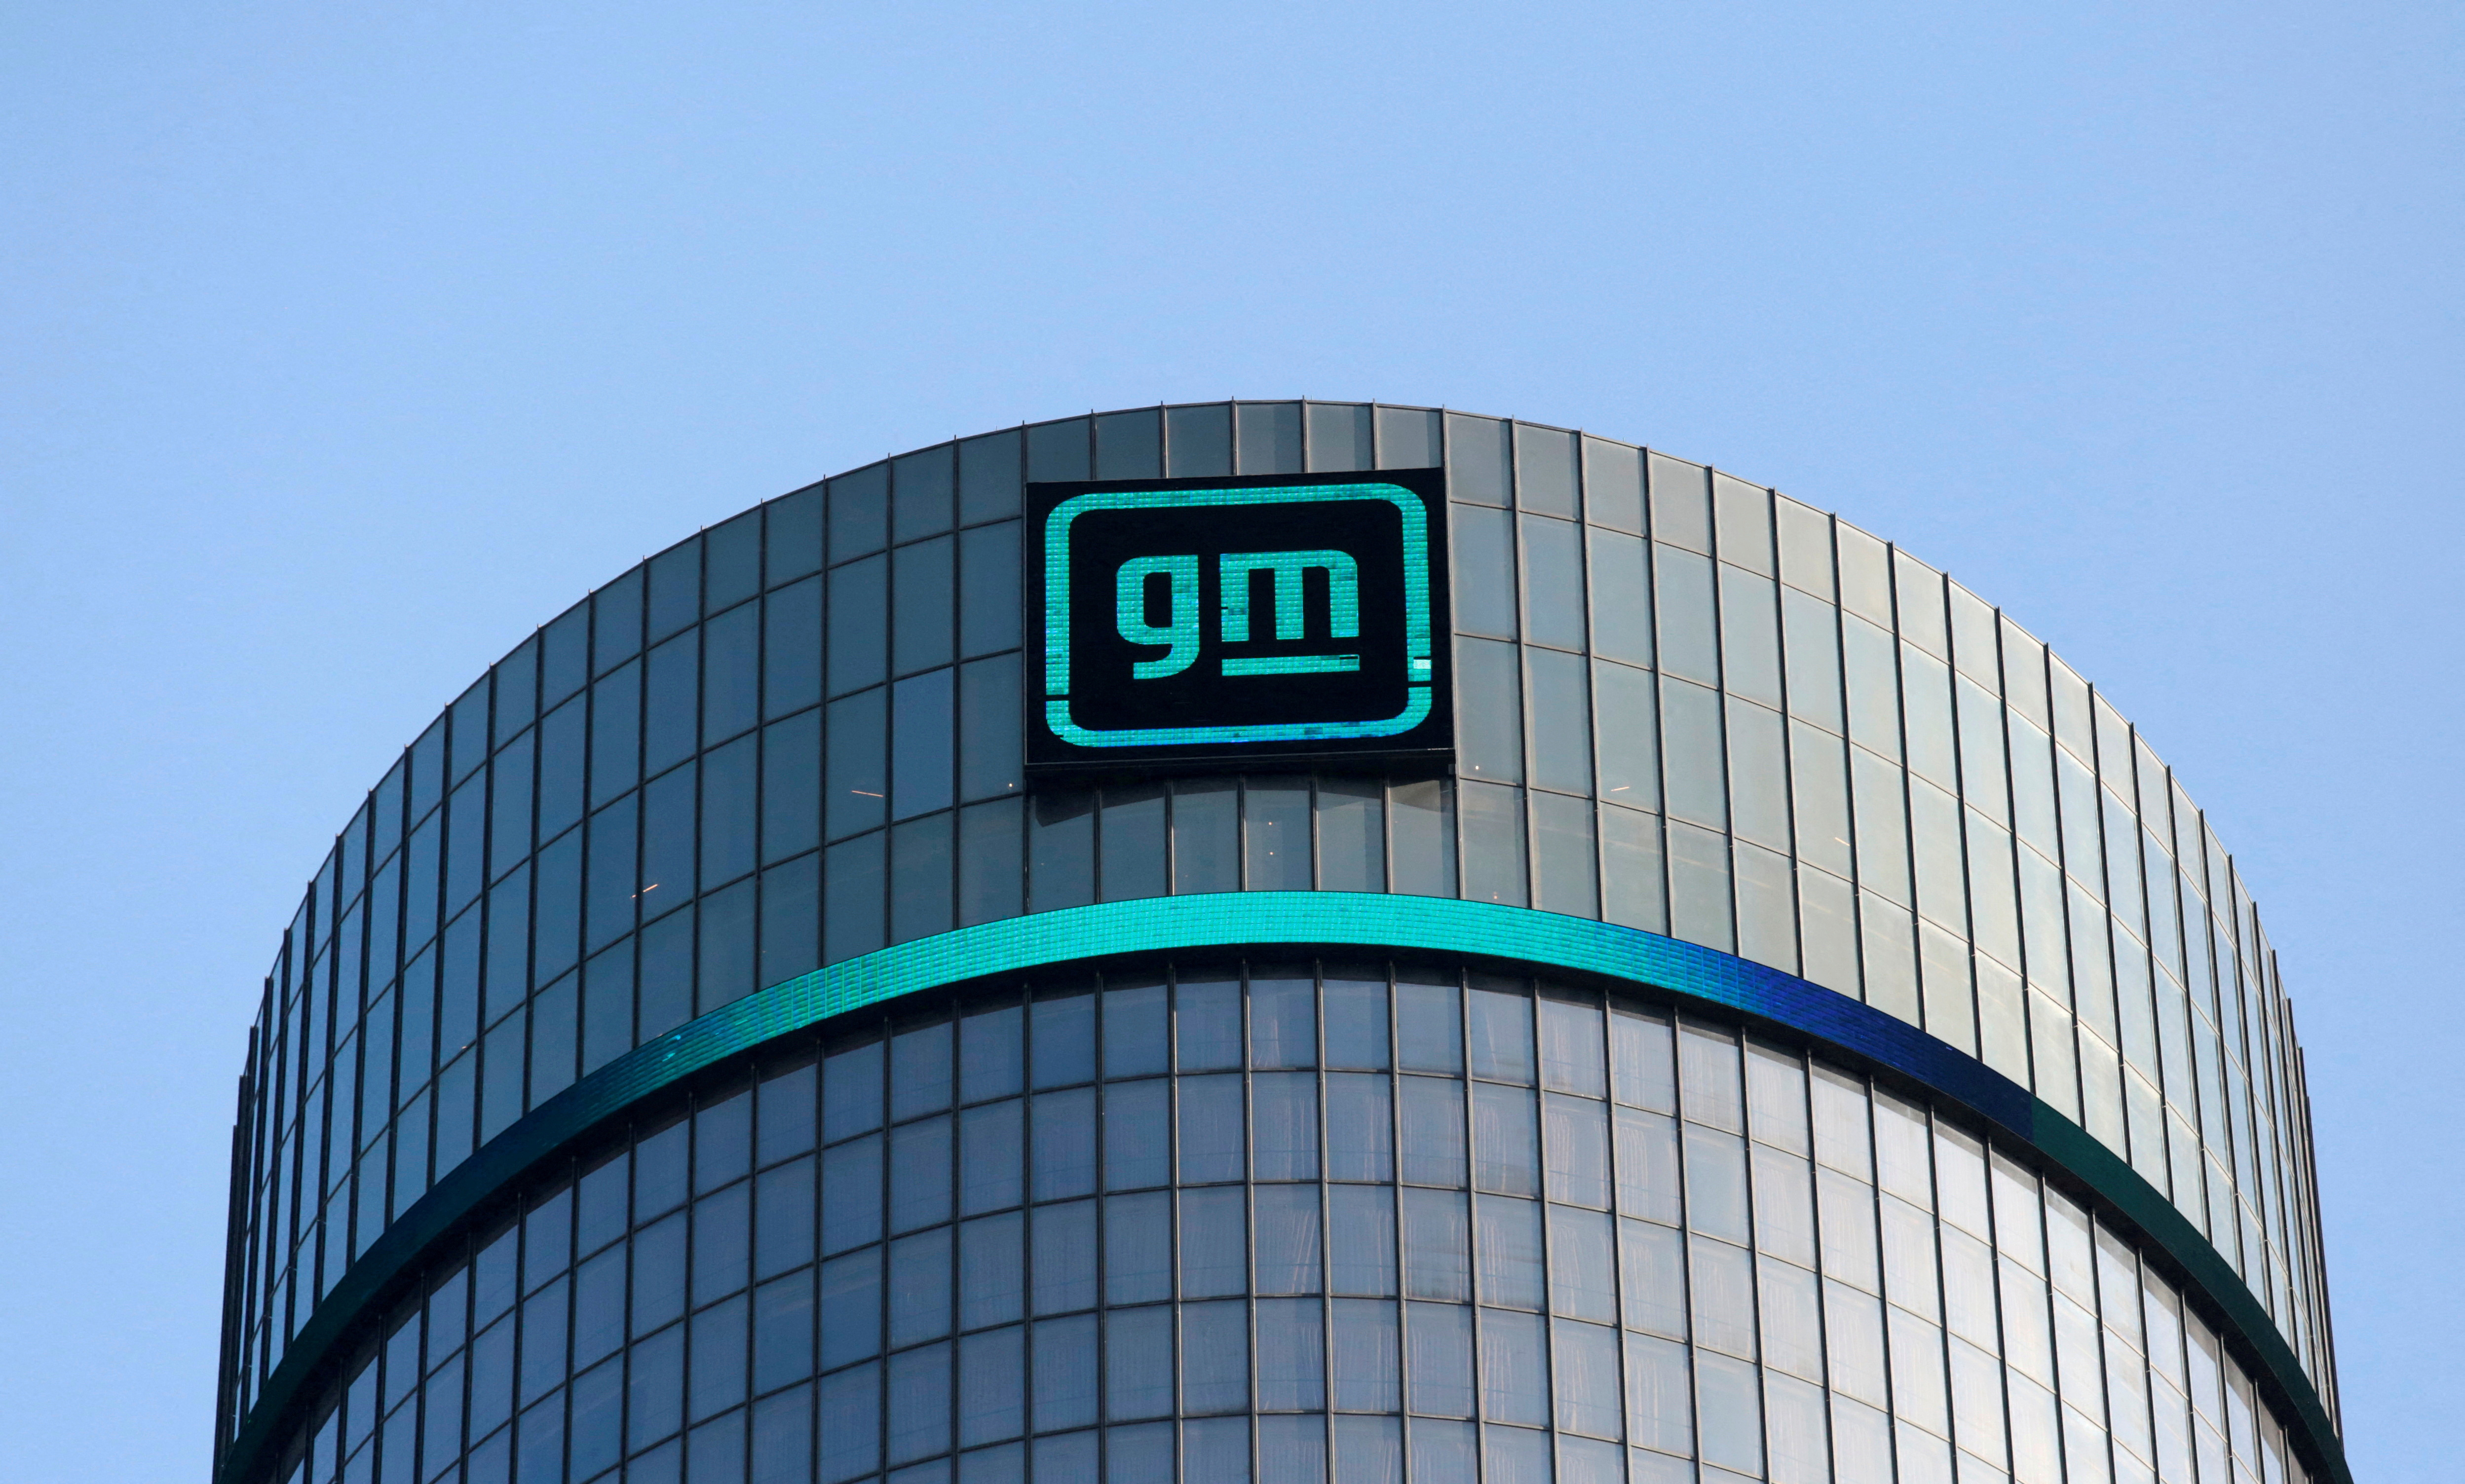 Logo von GM auf dem Firmensitz